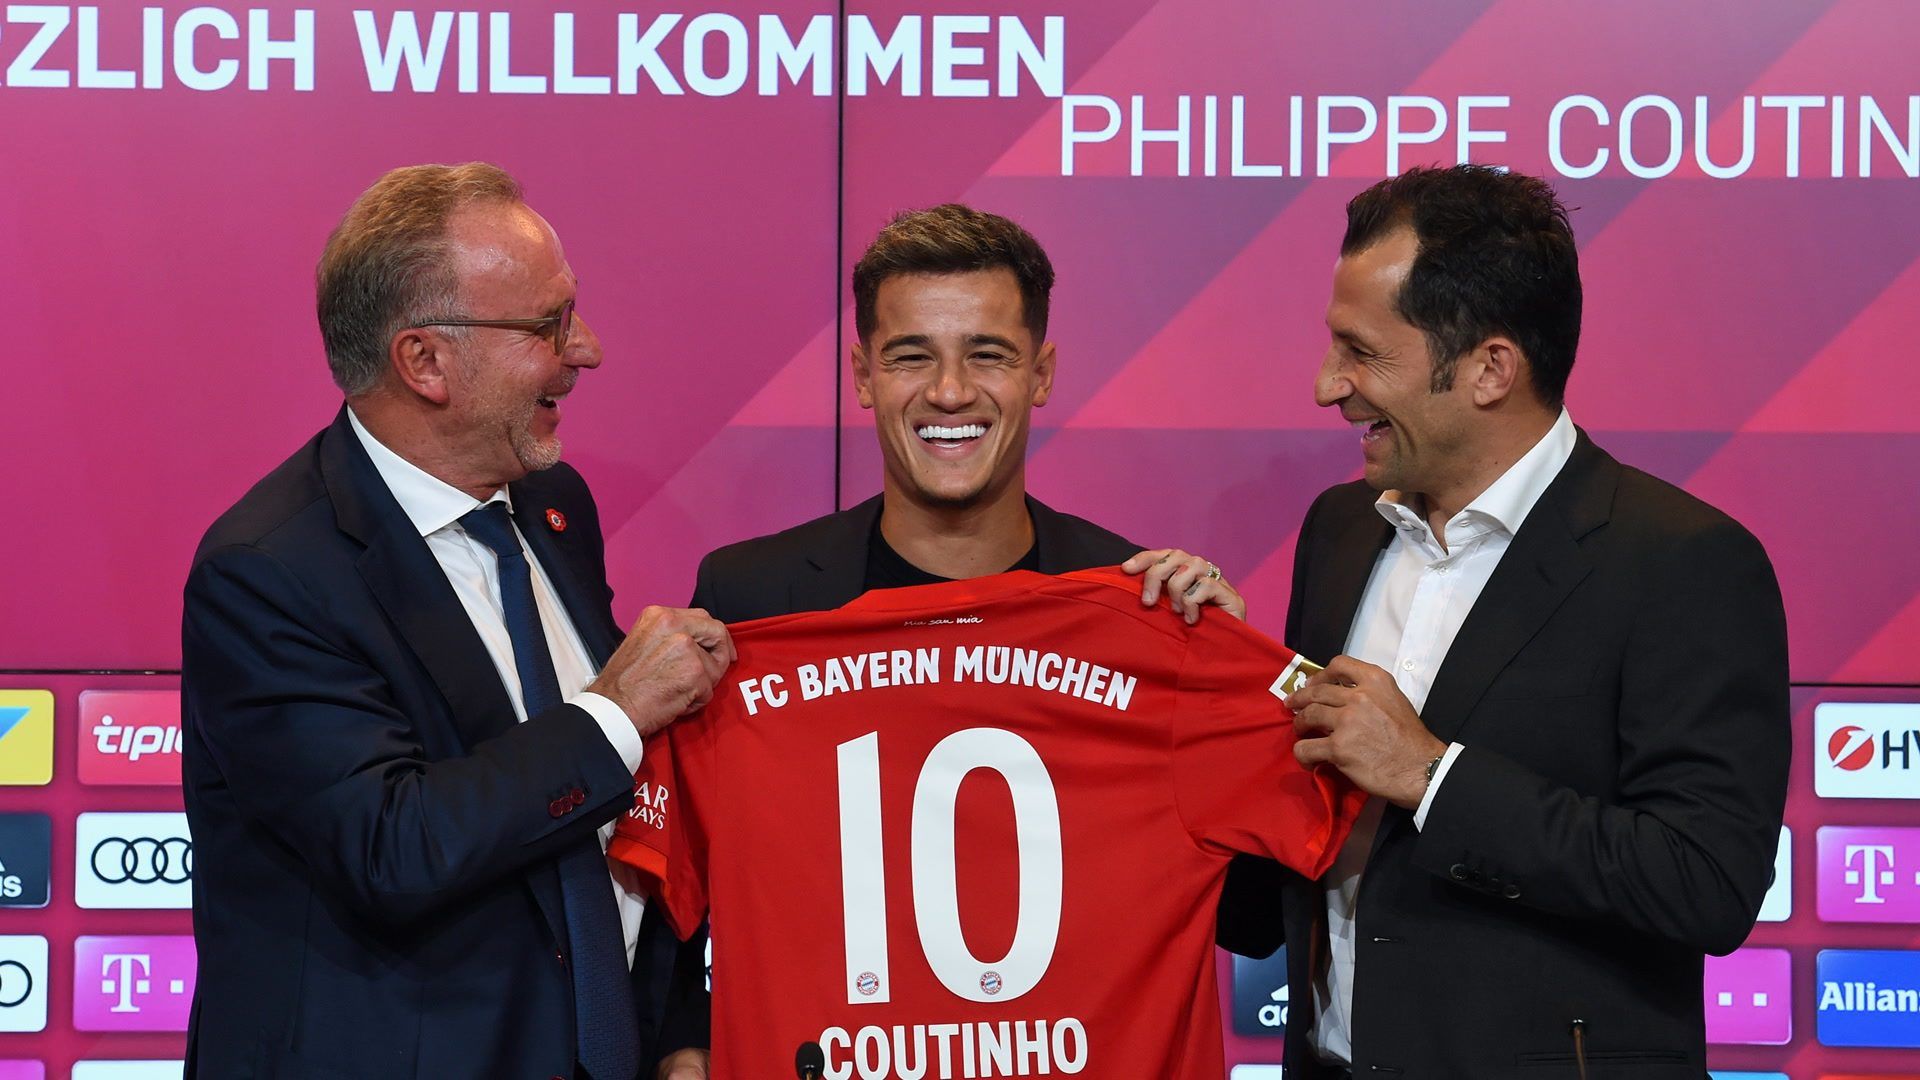 Bundesliga. Philippe Coutinho joins Bayern Munich on loan